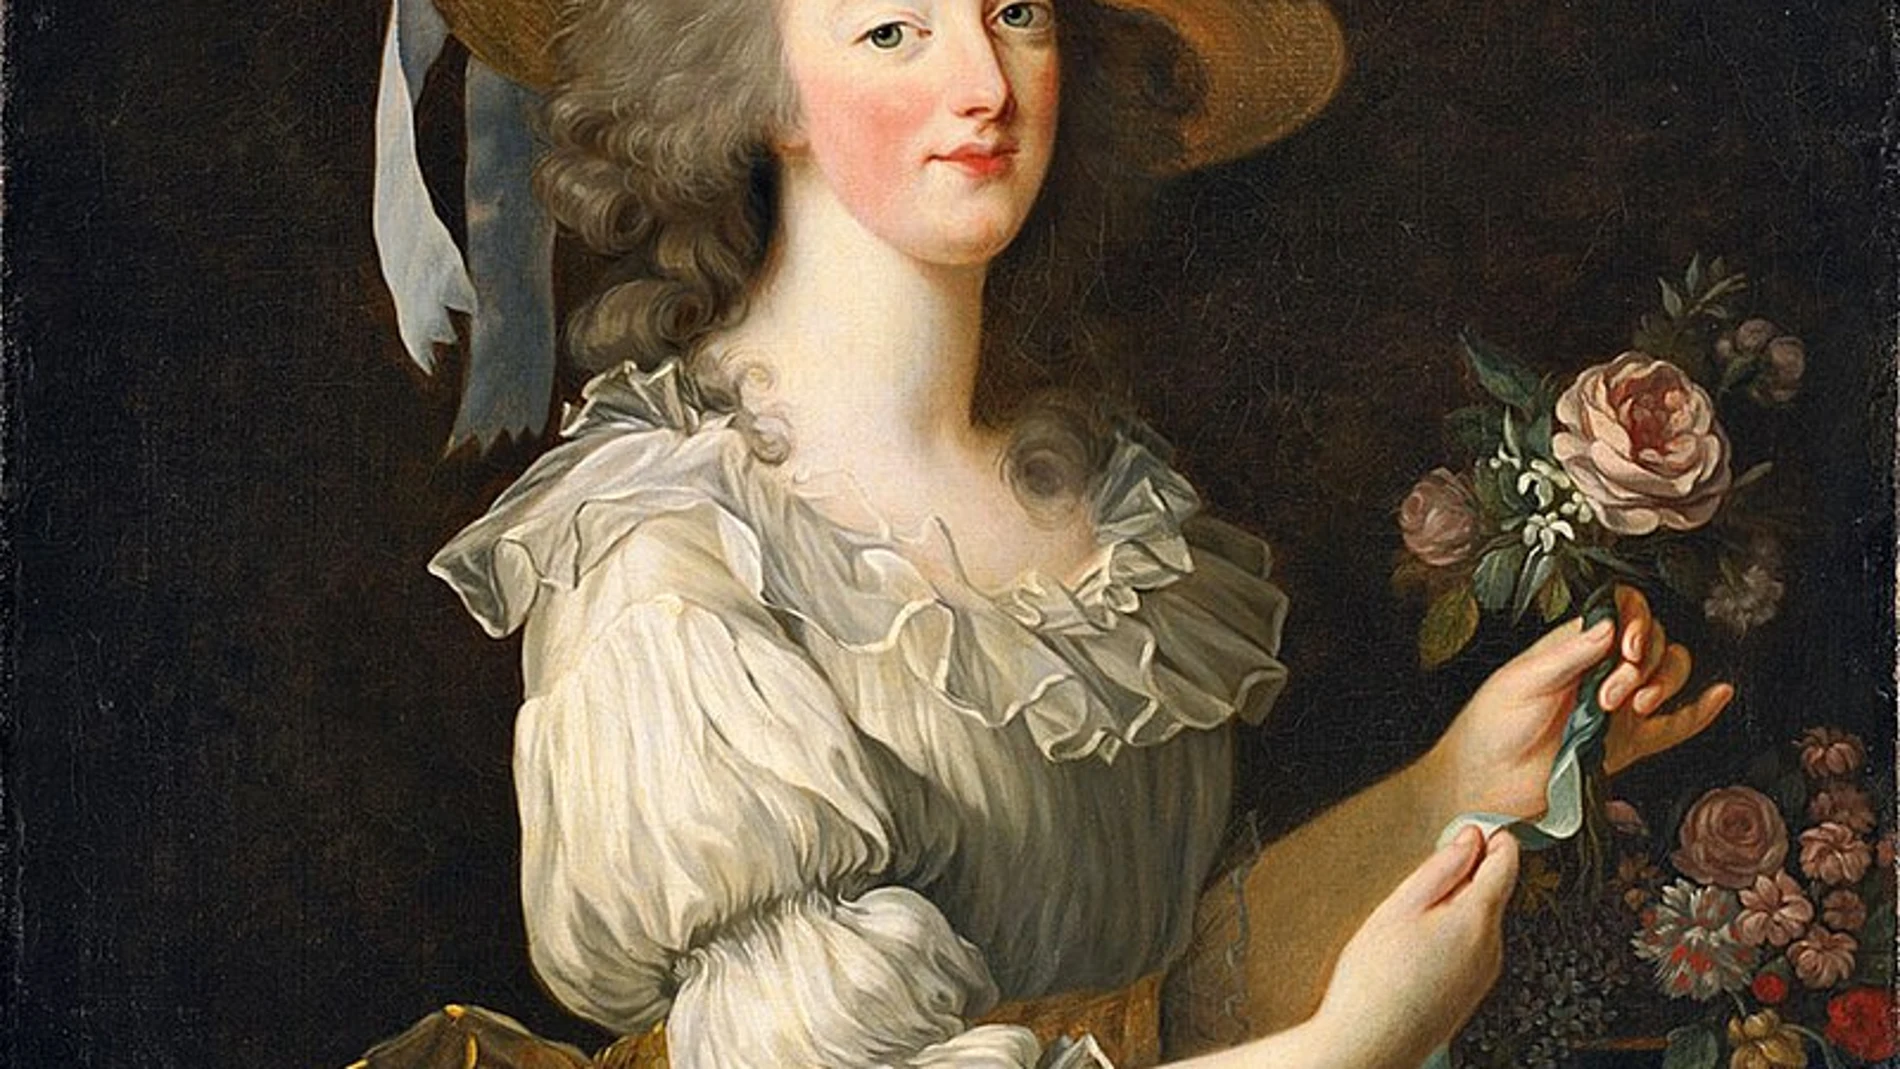 El primer retrato de María Antonieta pintado por la artista en 1778